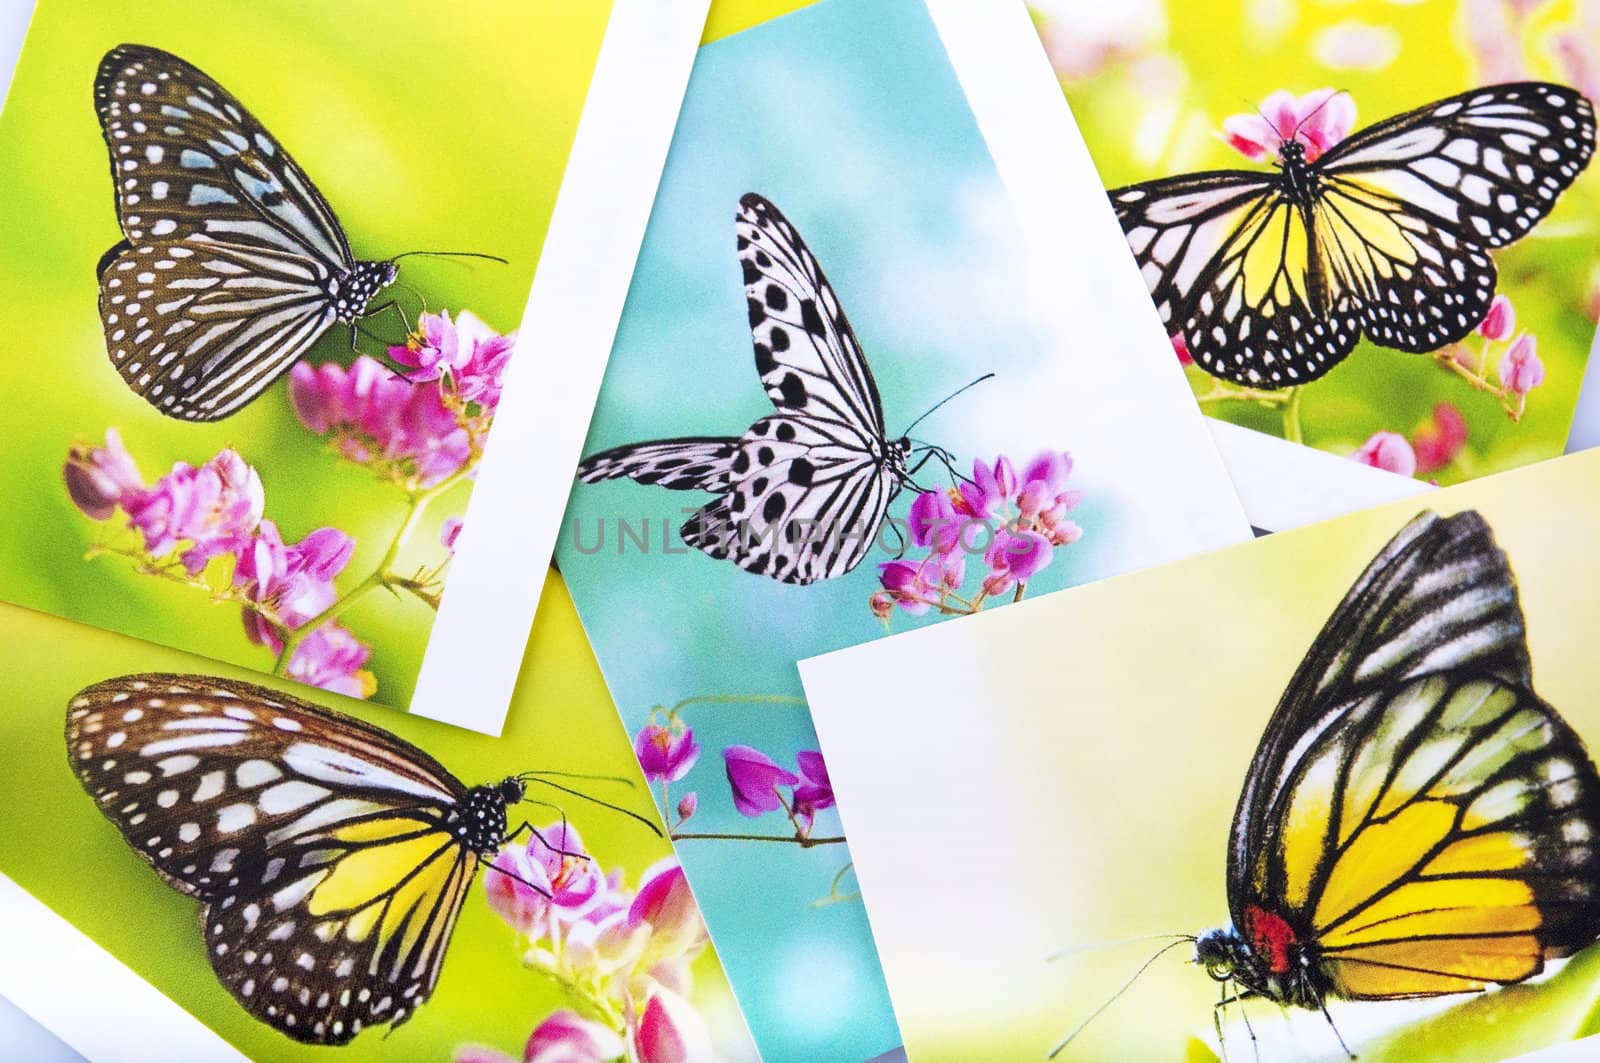 Butterfly postcard by szefei